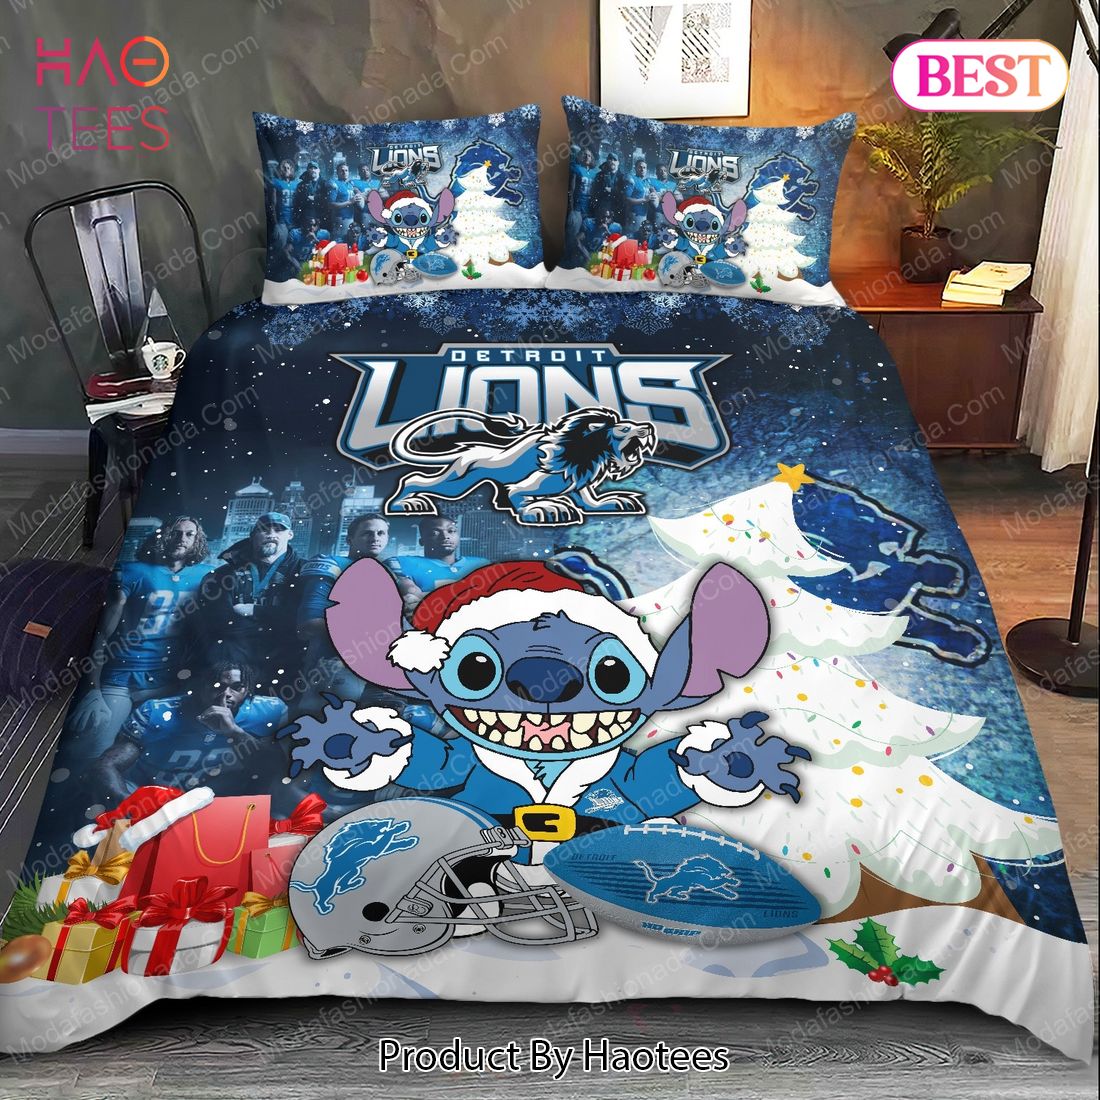 Buy Stitch NFL Detroit Lions Christmas Bedding Sets Bed Sets, Bedroom Sets, Comforter Sets, Duvet Cover, Bedspread